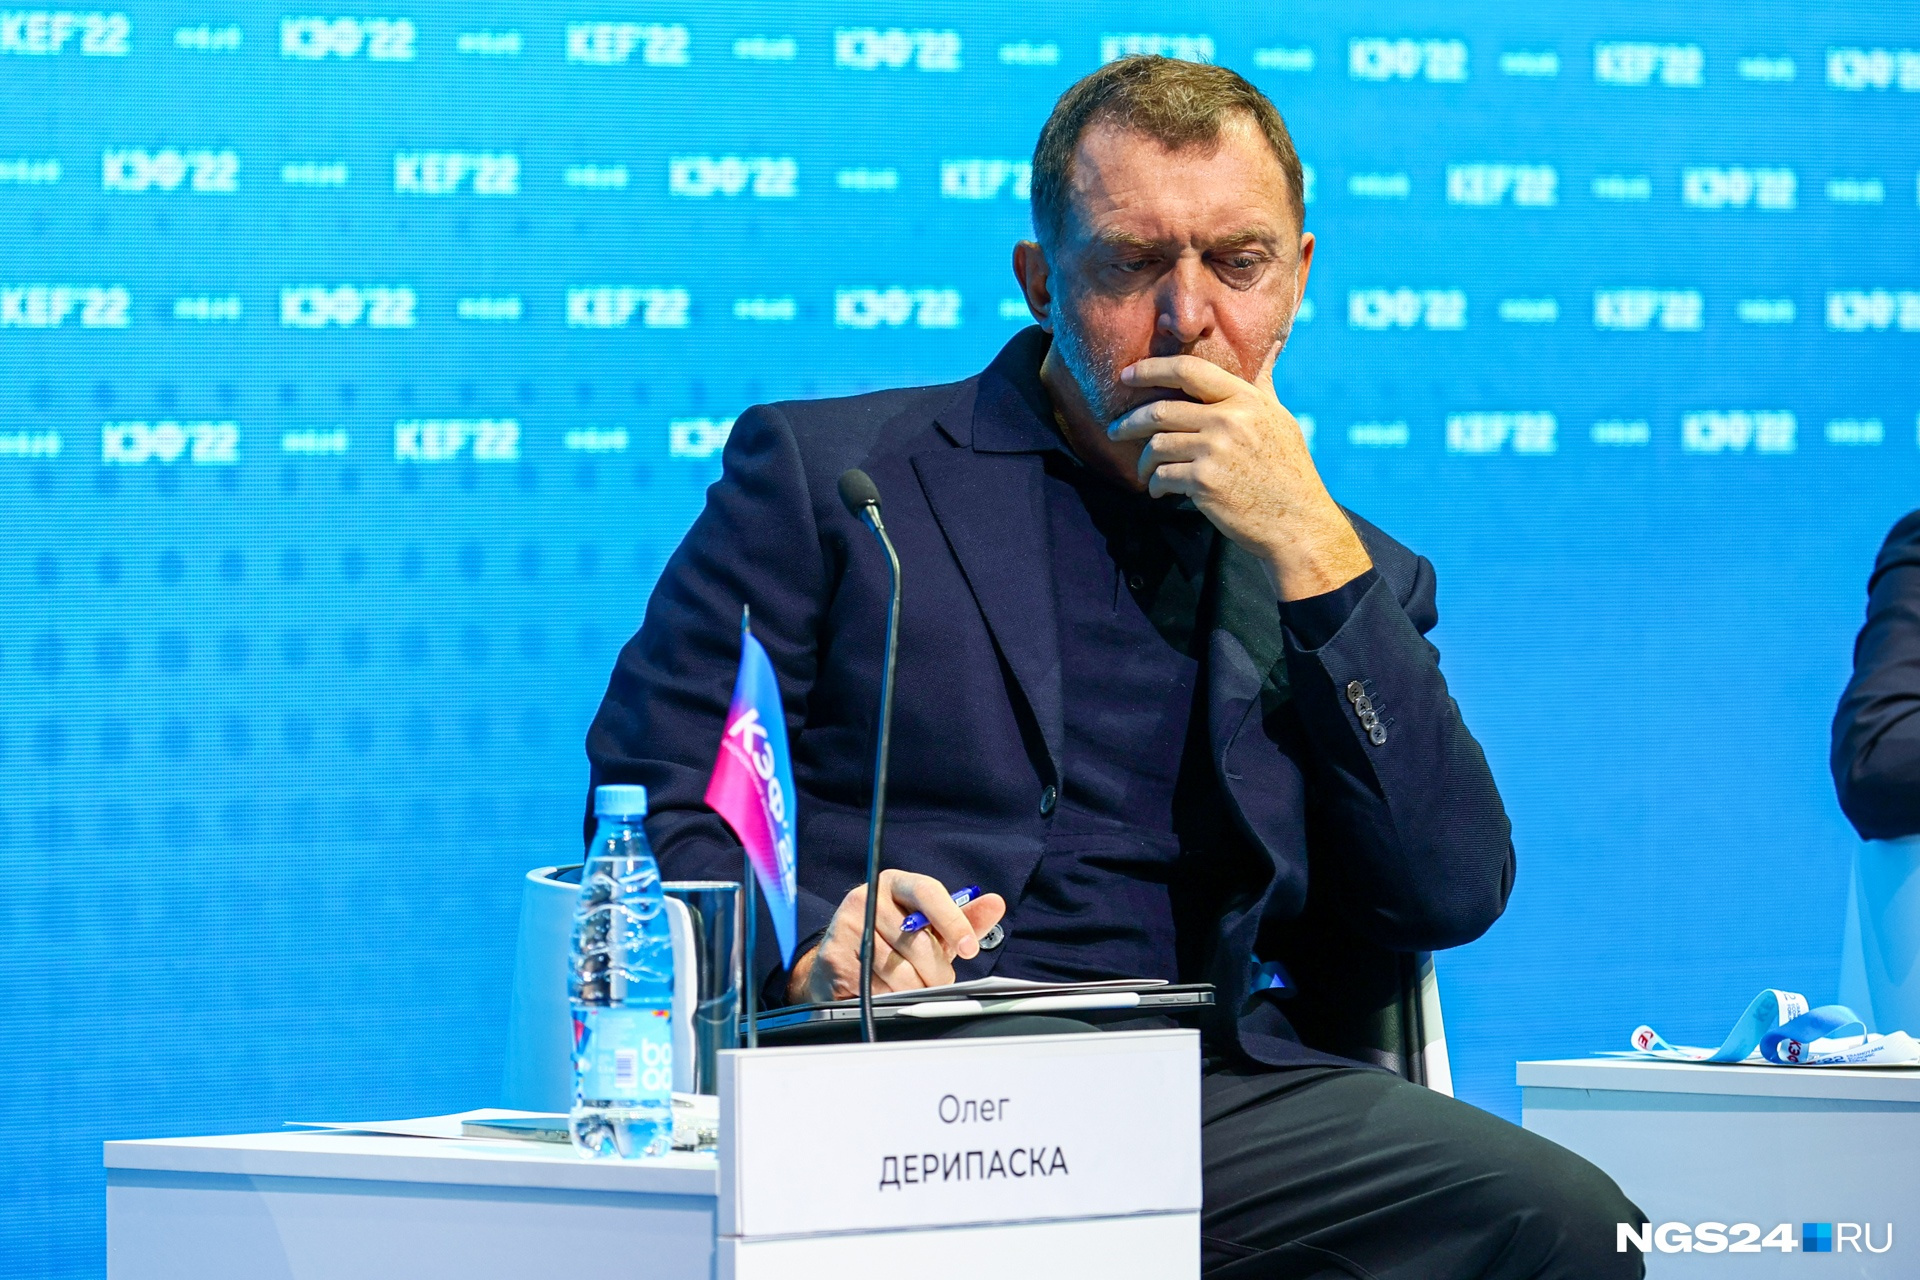 Хмурый Олег Дерипаска на Красноярском экономическом форуме в 2022 году